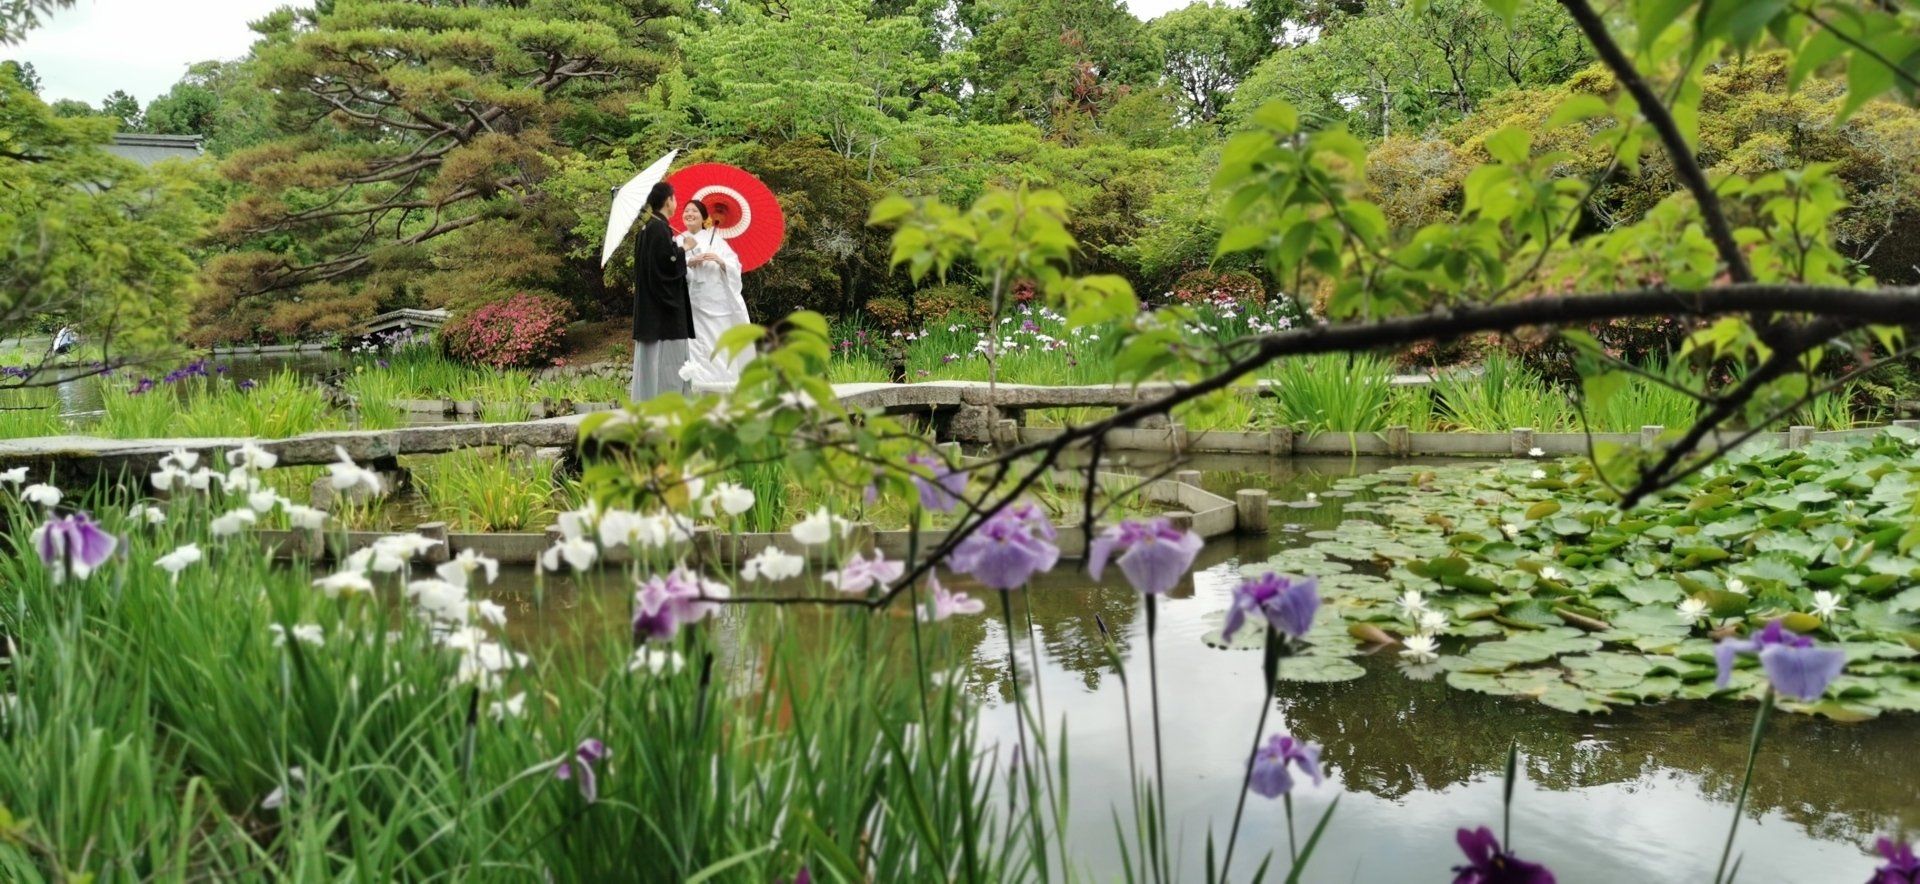 gärten in japan: www.japan-reise.com